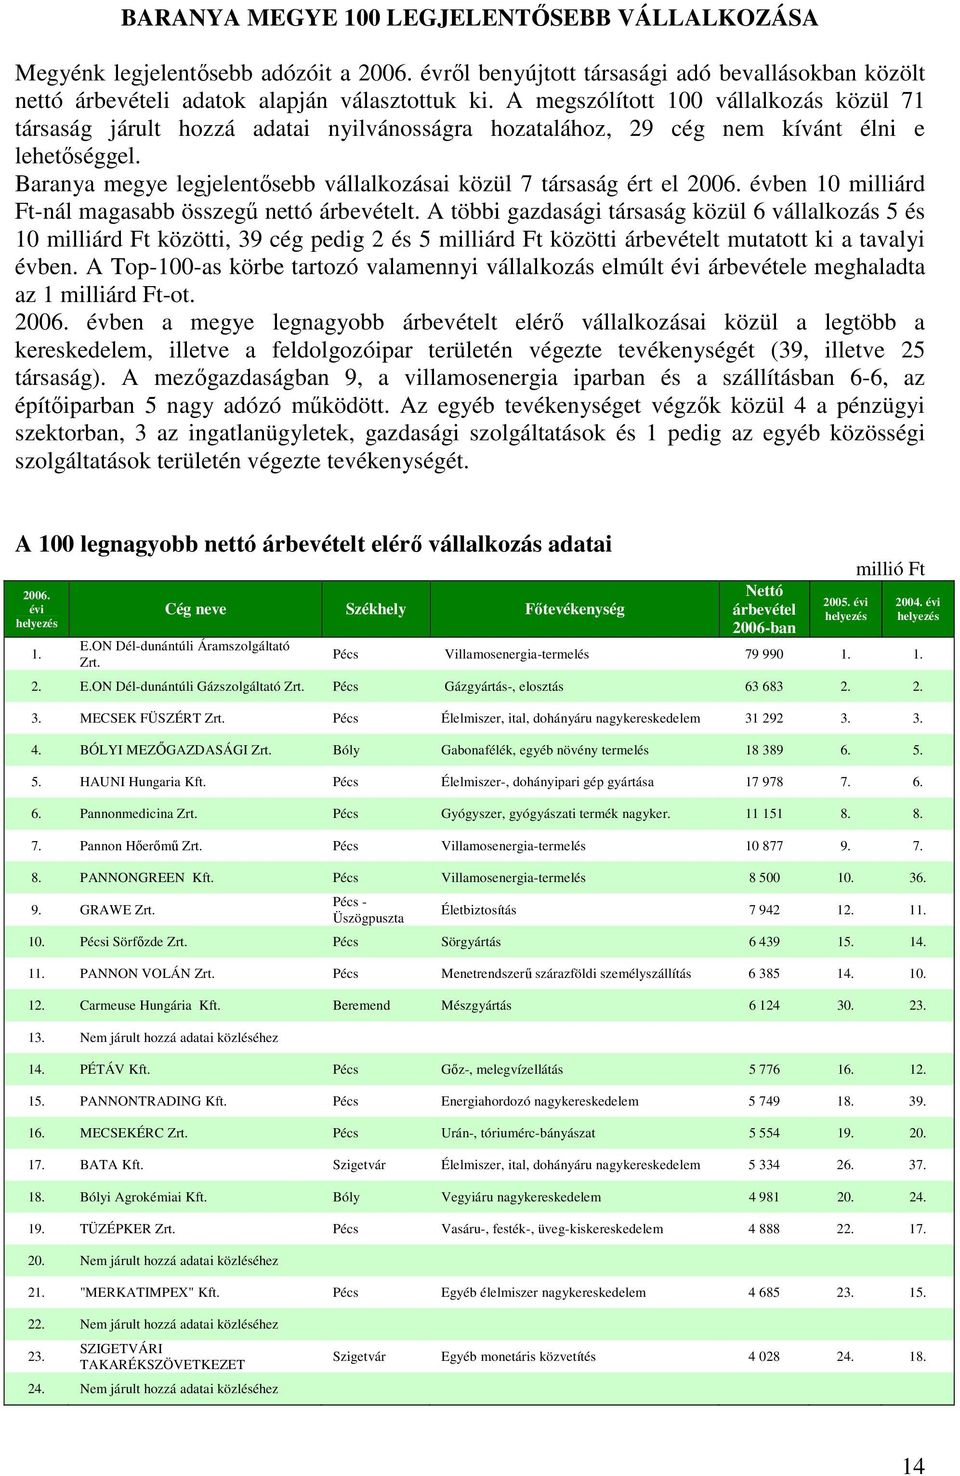 Baranya megye legjelentısebb vállalkozásai közül 7 társaság ért el 2006. évben 10 milliárd Ft-nál magasabb összegő nettó árbevételt.